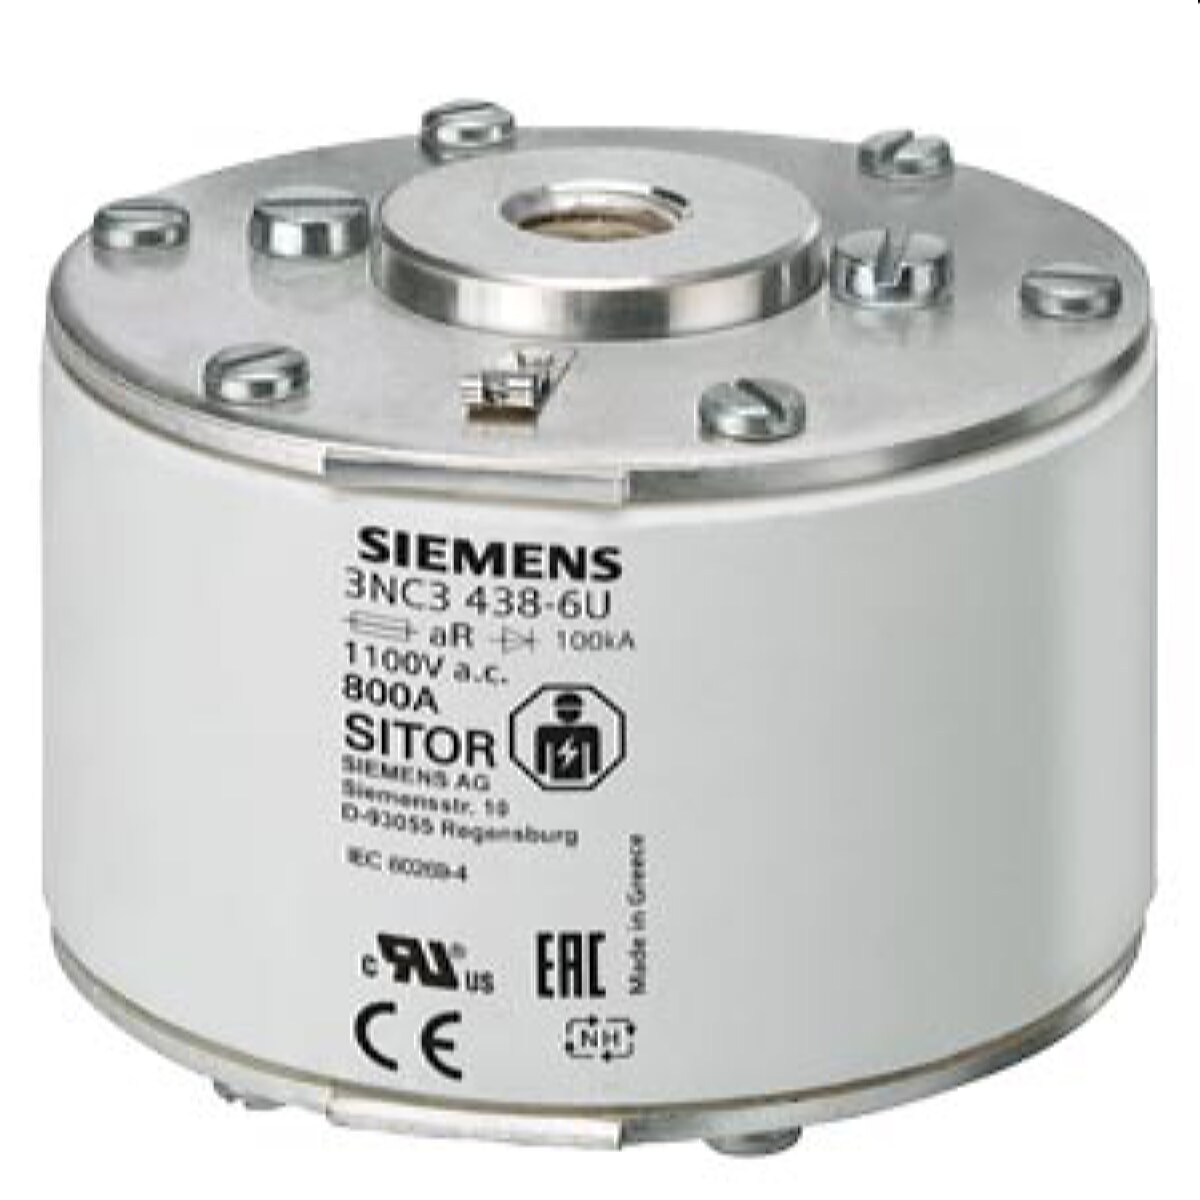 Siemens SITOR-Sicherungseinsatz für Halbleiterschutz 800A aR 1100V AC 3NC3438-6U